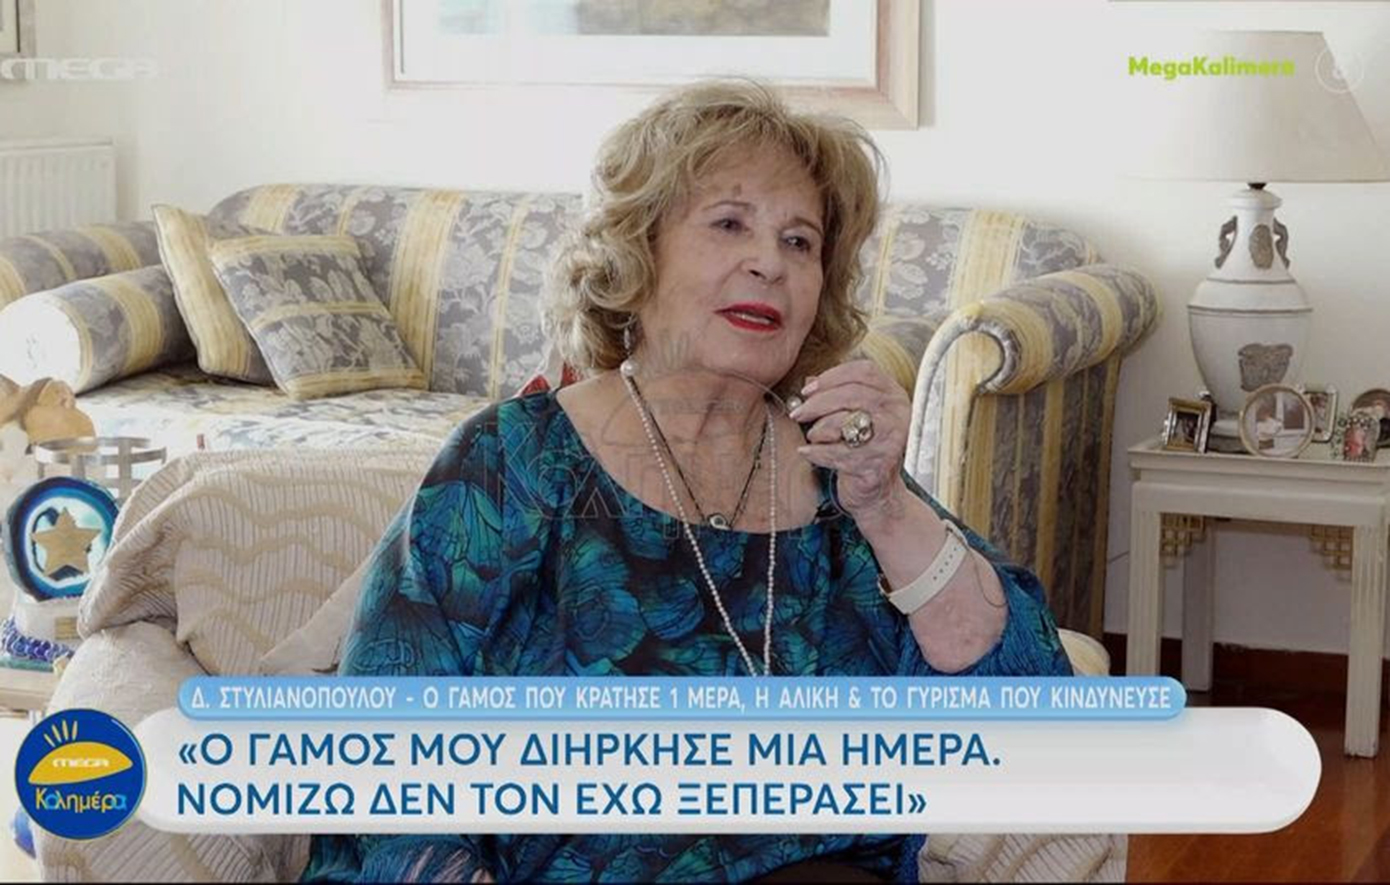 Η τελευταία συνέντευξη της Δέσποινας Στυλιανοπούλου &#8211; Η εξομολόγηση για τον γάμο της που δεν ξεπέρασε ποτέ